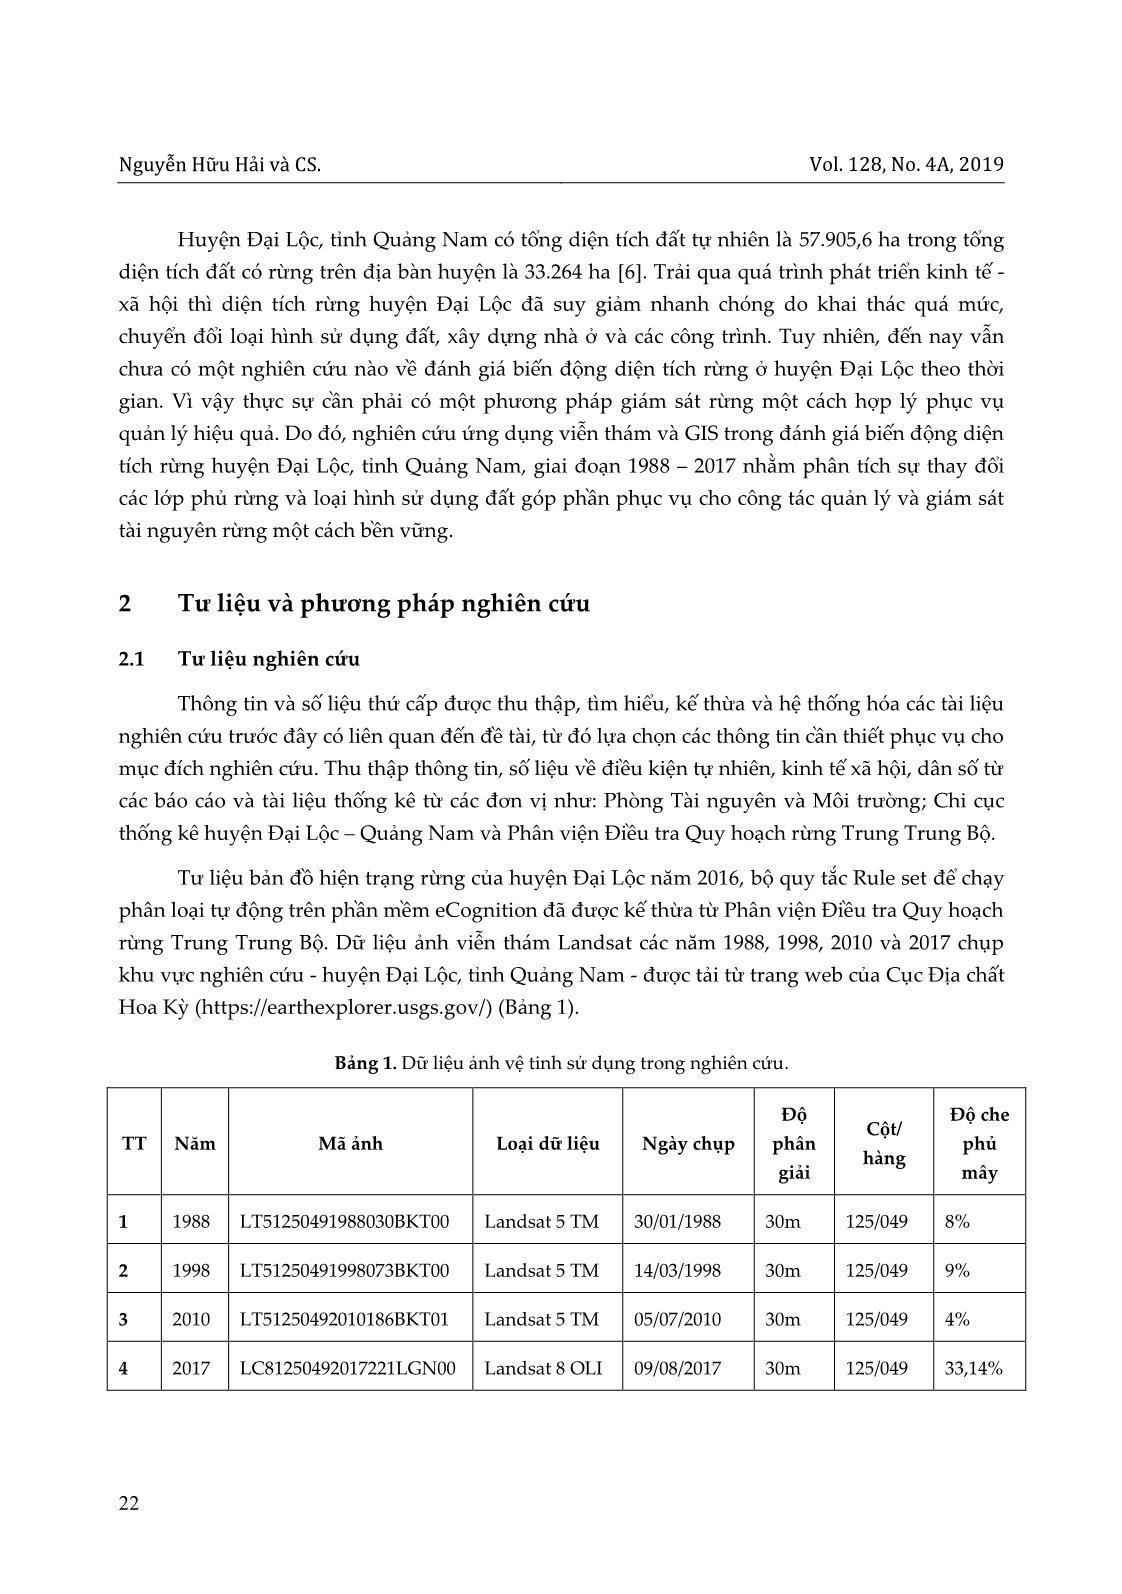 Ứng dụng viễn thám và GIS trong đánh giá biến động diện tích rừng huyện Đại Lộc, tỉnh Quảng Nam giai đoạn 1988-2017 trang 2